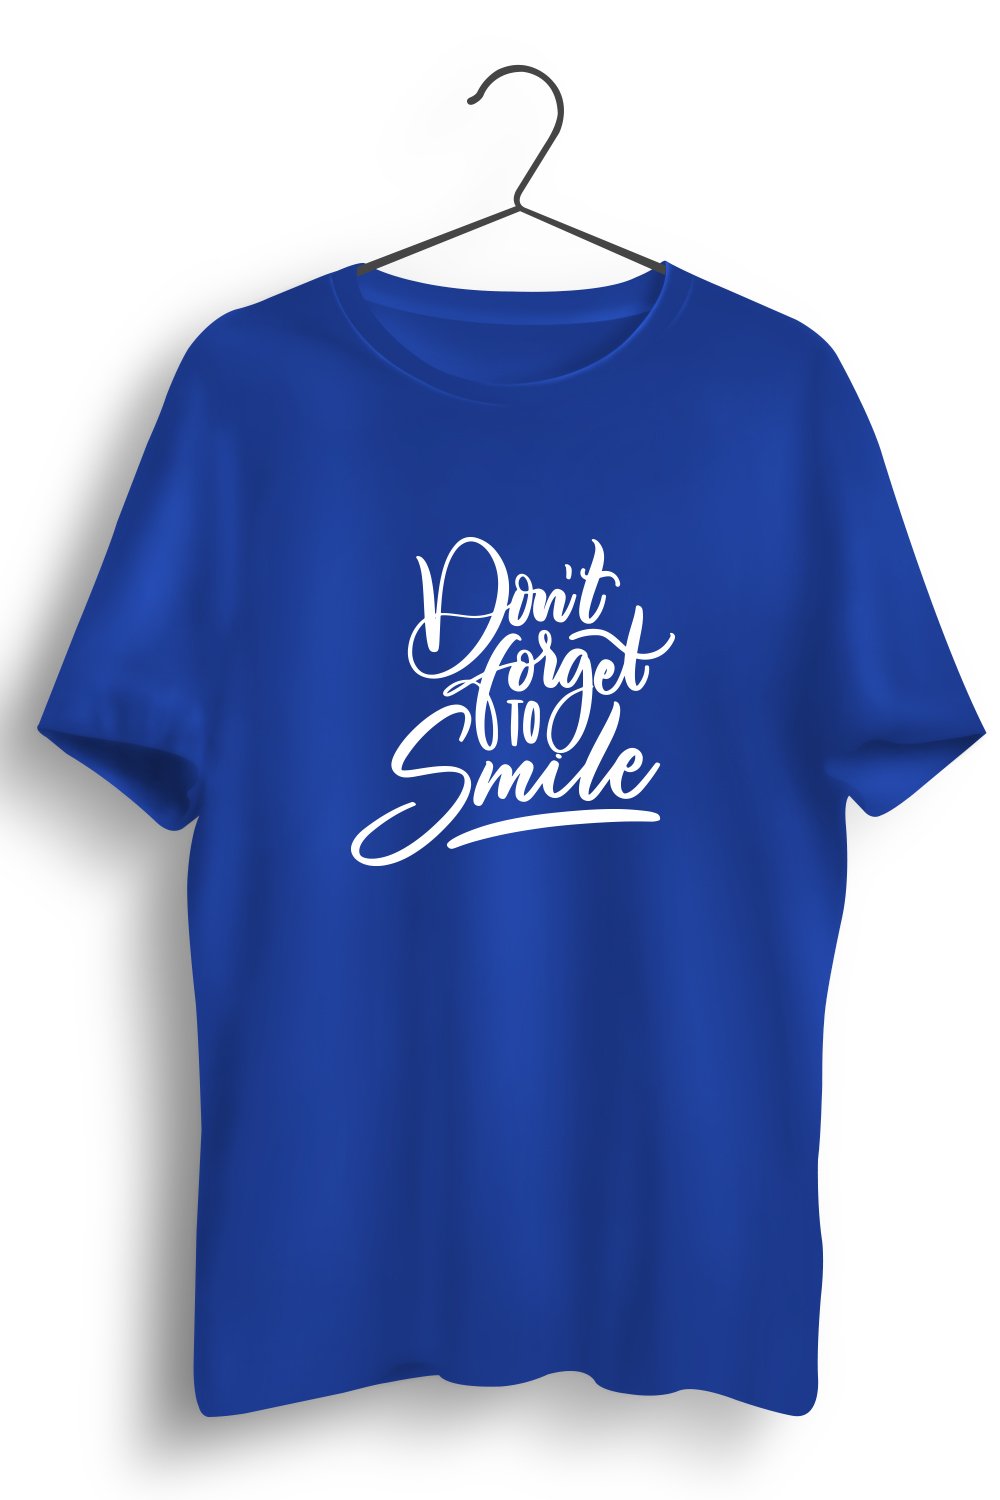 Smile Graphic Printed Blue Tshirt